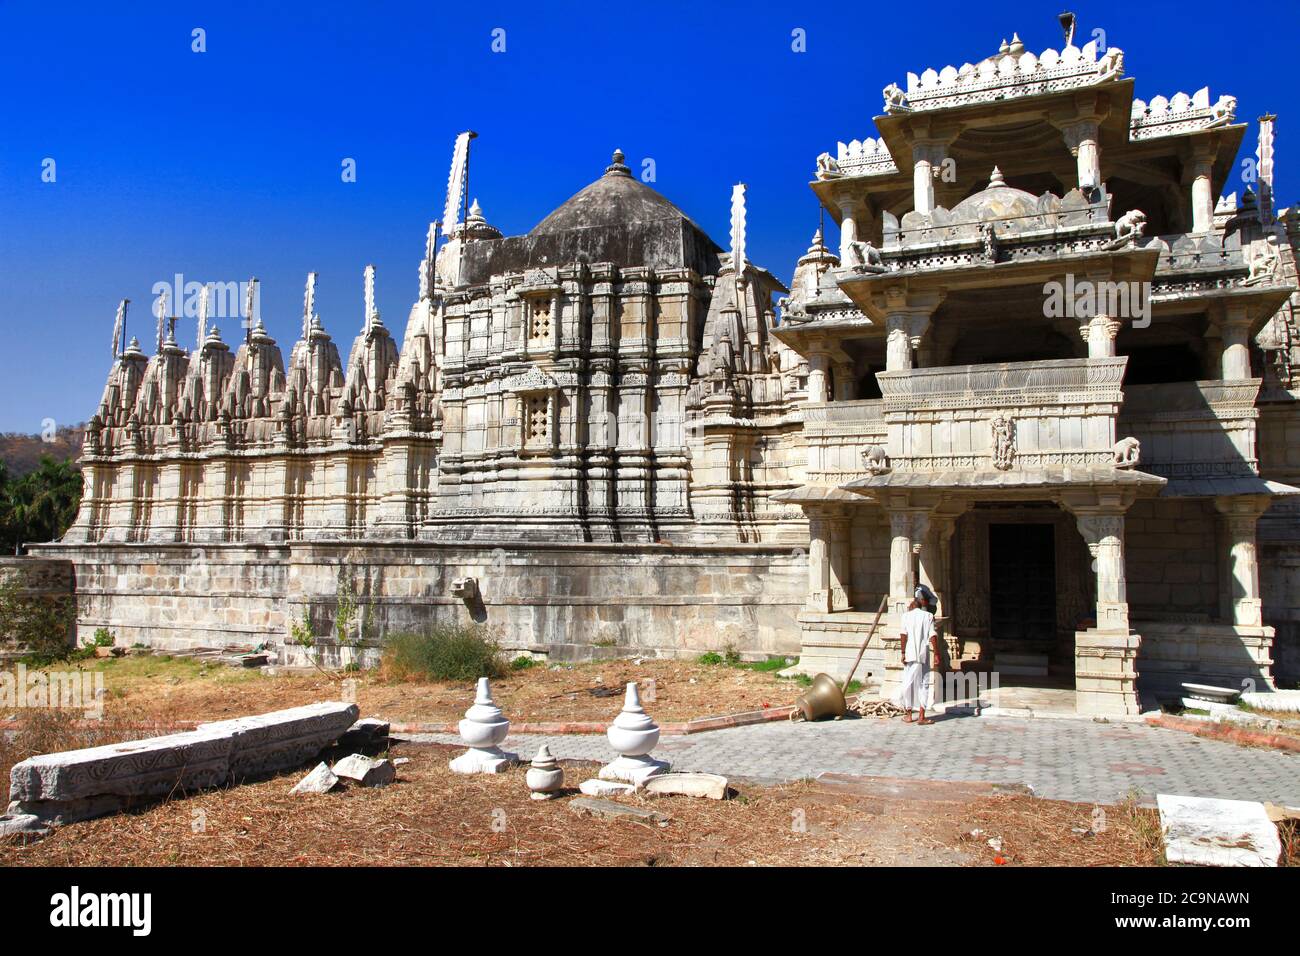 Ranakpur Tempel ist einer der größten und wichtigsten Tempel in Jain Kultur. Rajasthan, Indien Stockfoto